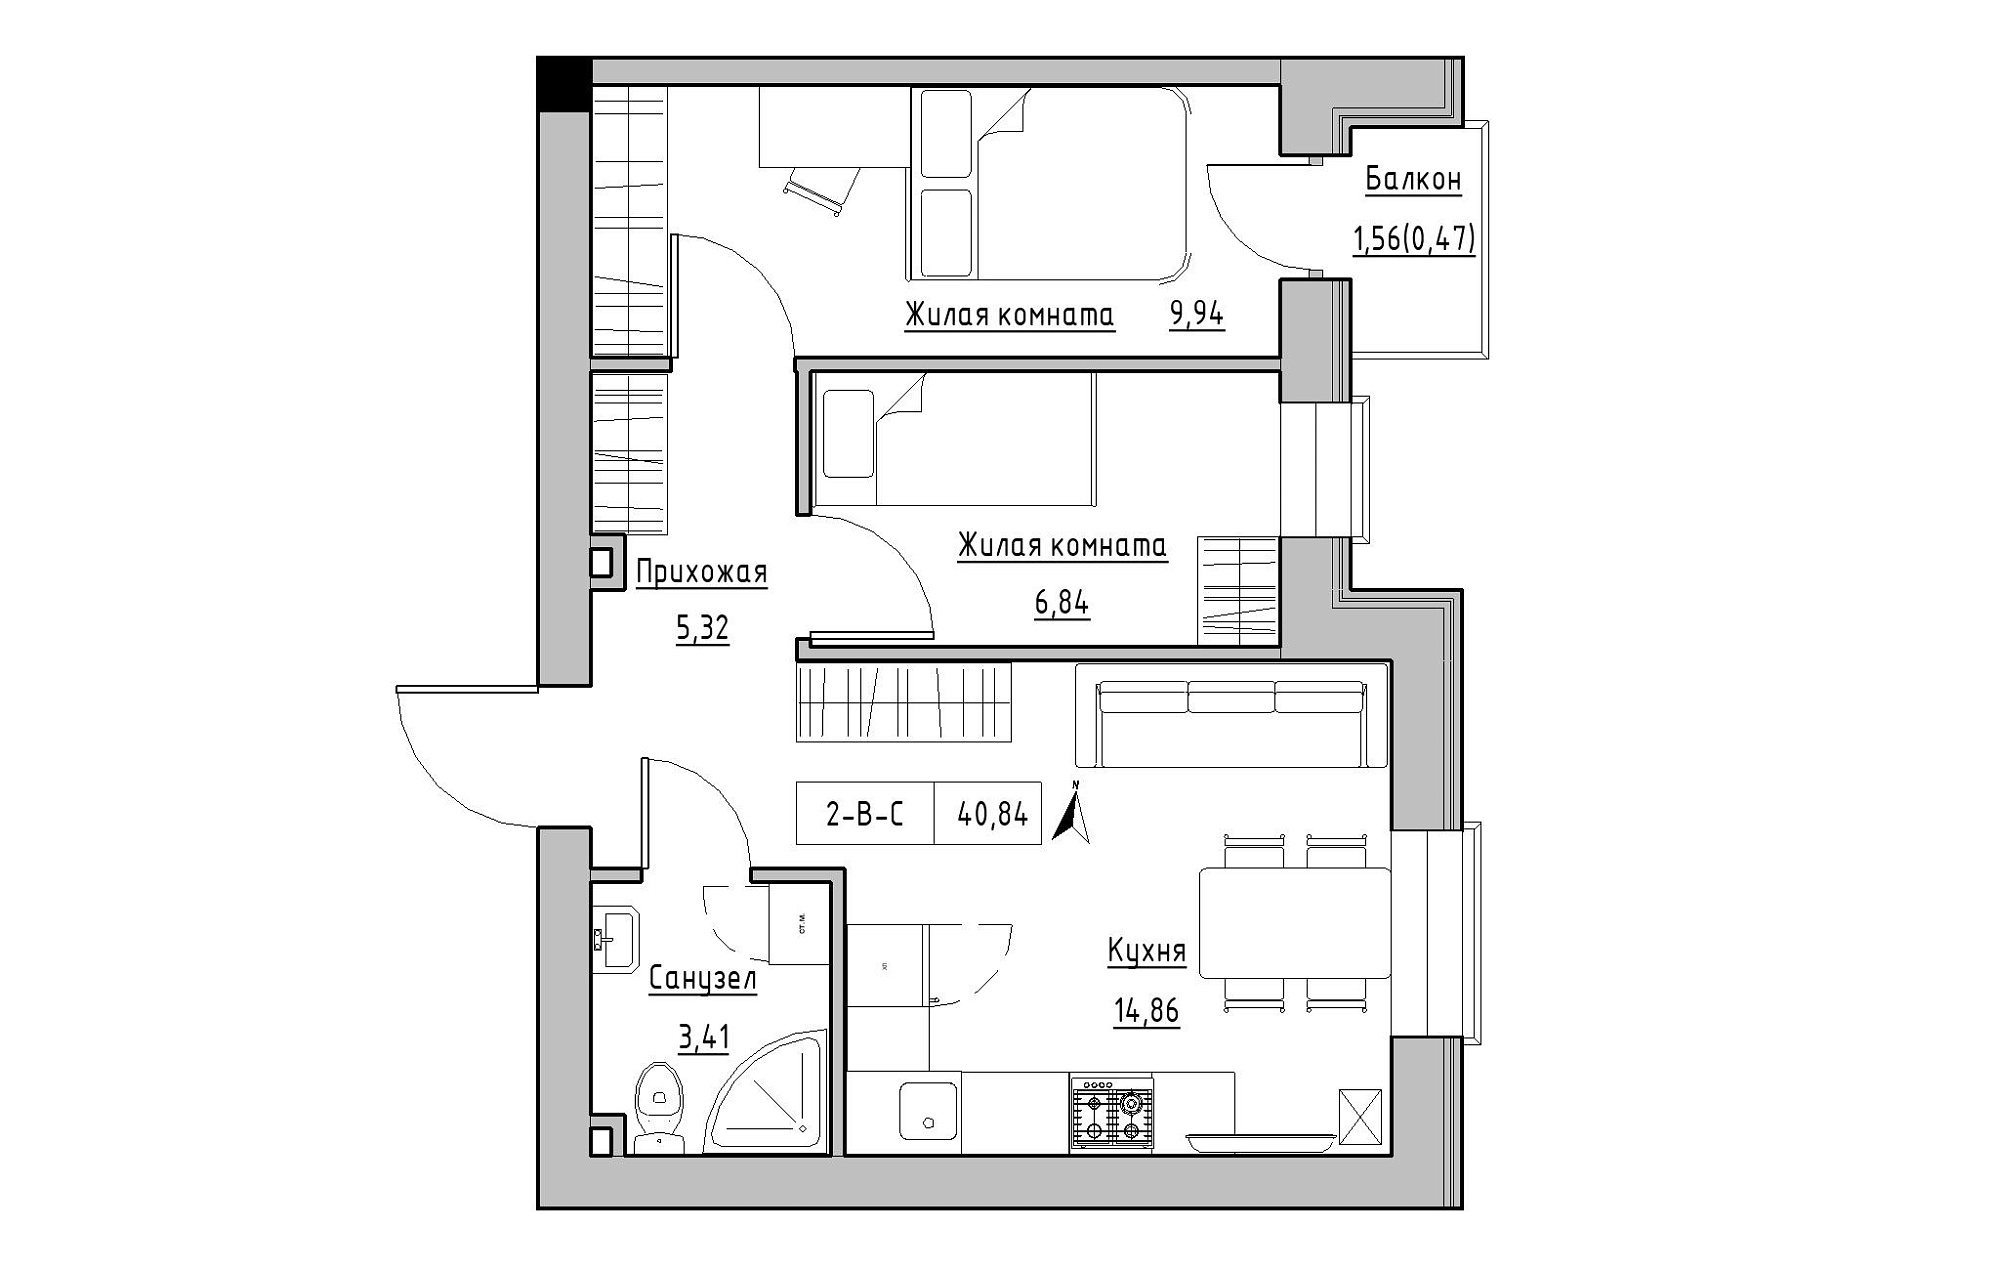 Планування 2-к квартира площею 40.84м2, KS-019-02/0006.